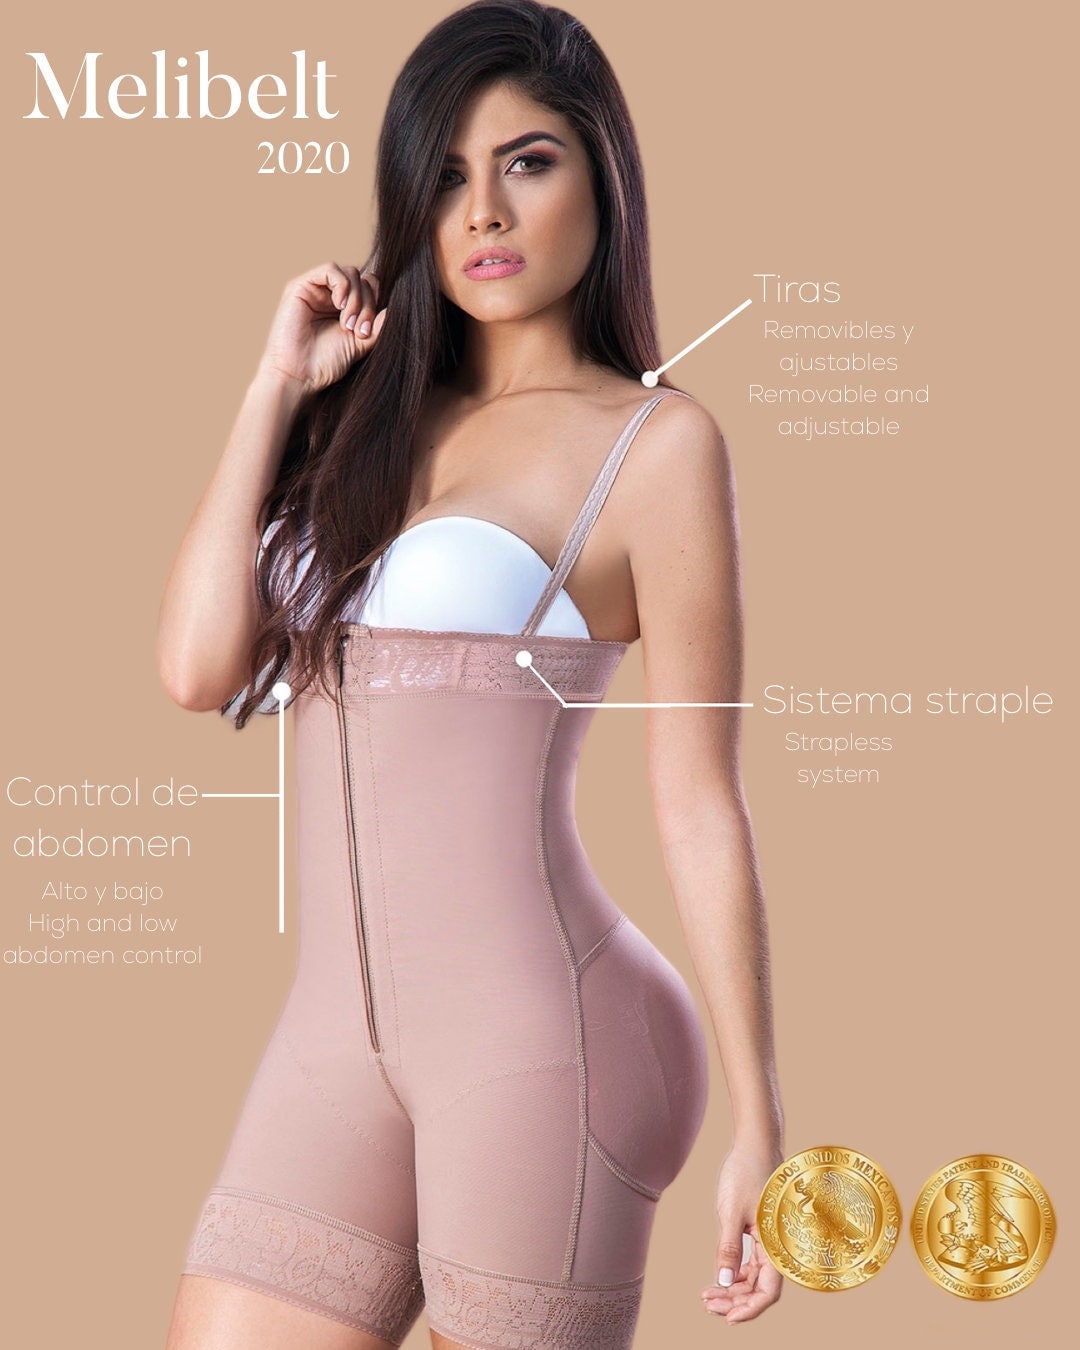 Fajas Colombiana 100% Original MD Abdomen control Tummy Tuck Perfect Body